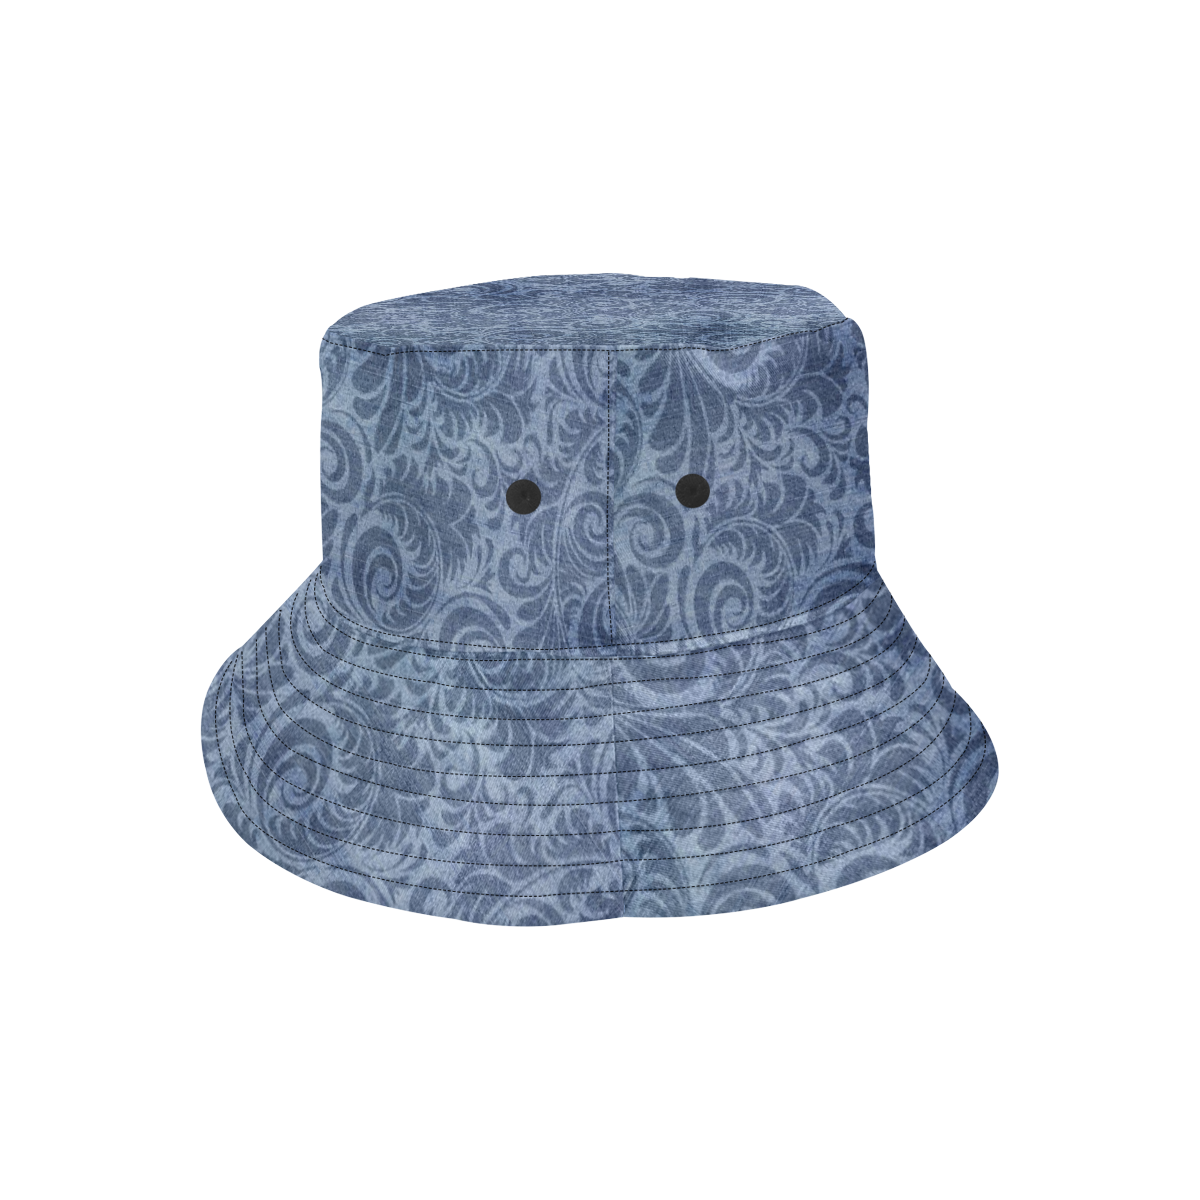 Denim with vintage floral pattern, blue boho All Over Print Bucket Hat